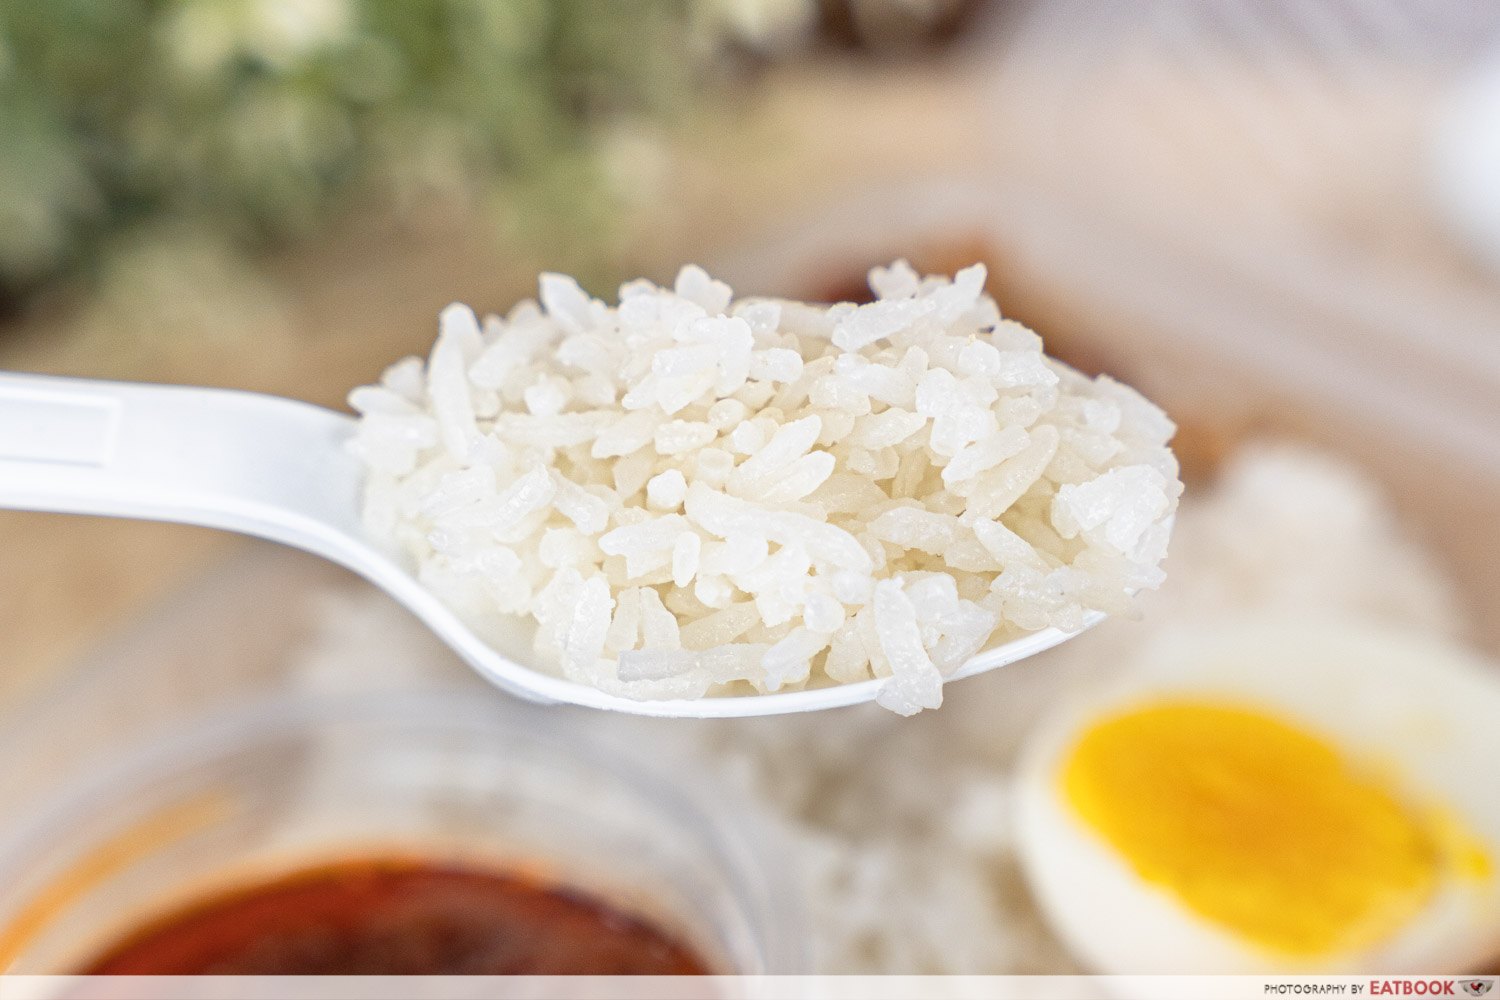 dickson nasi lemak rice